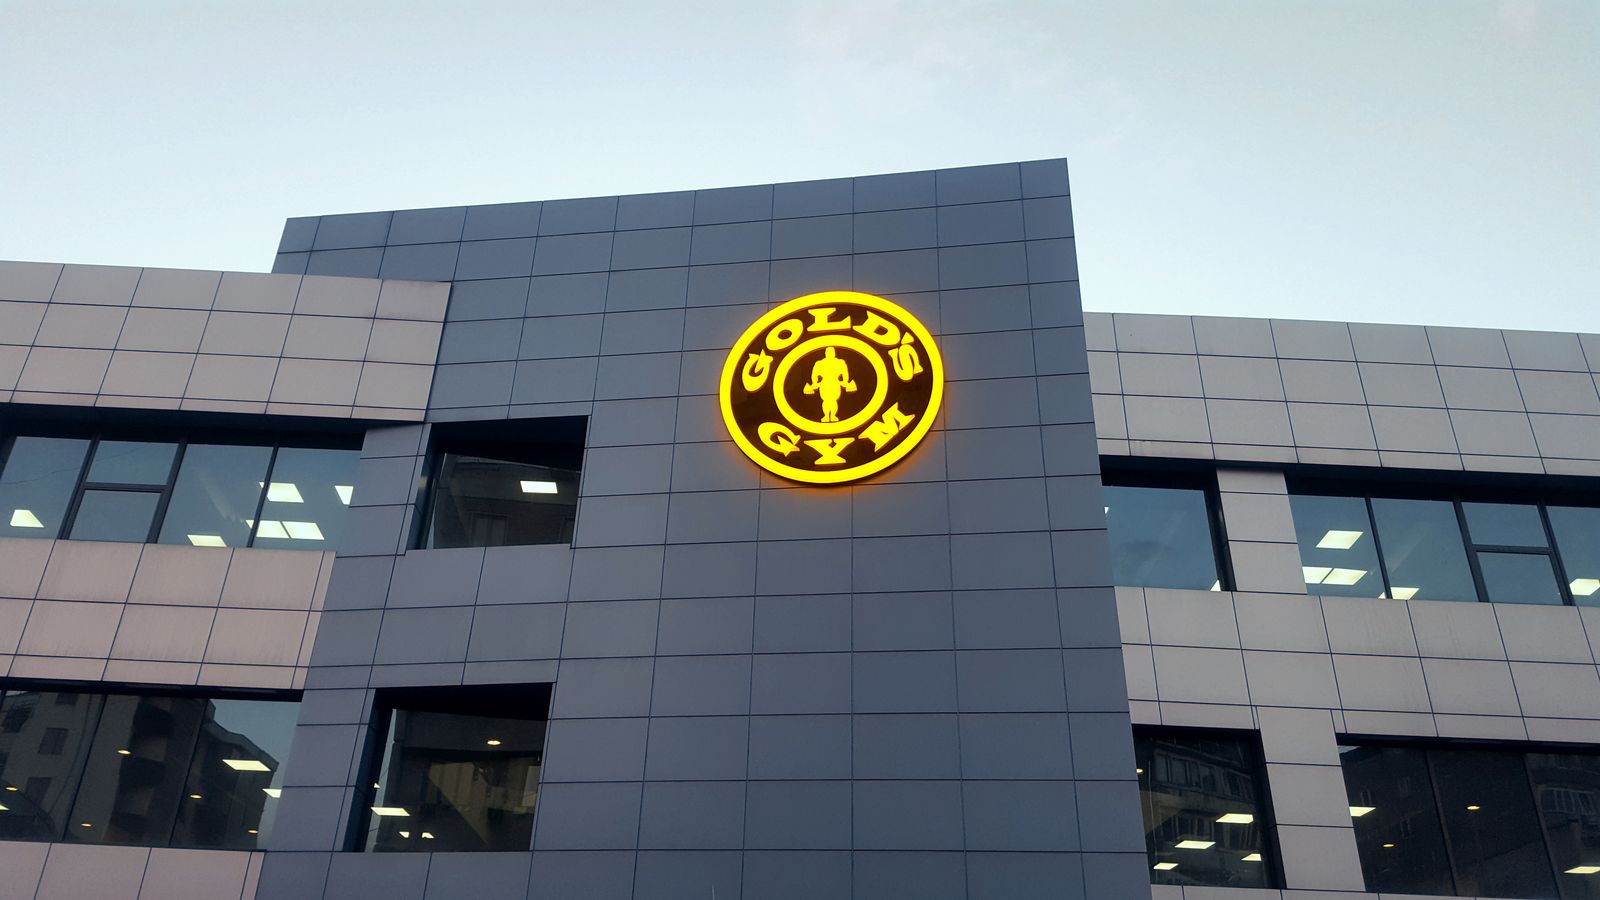 golds gym illuminated logo on building